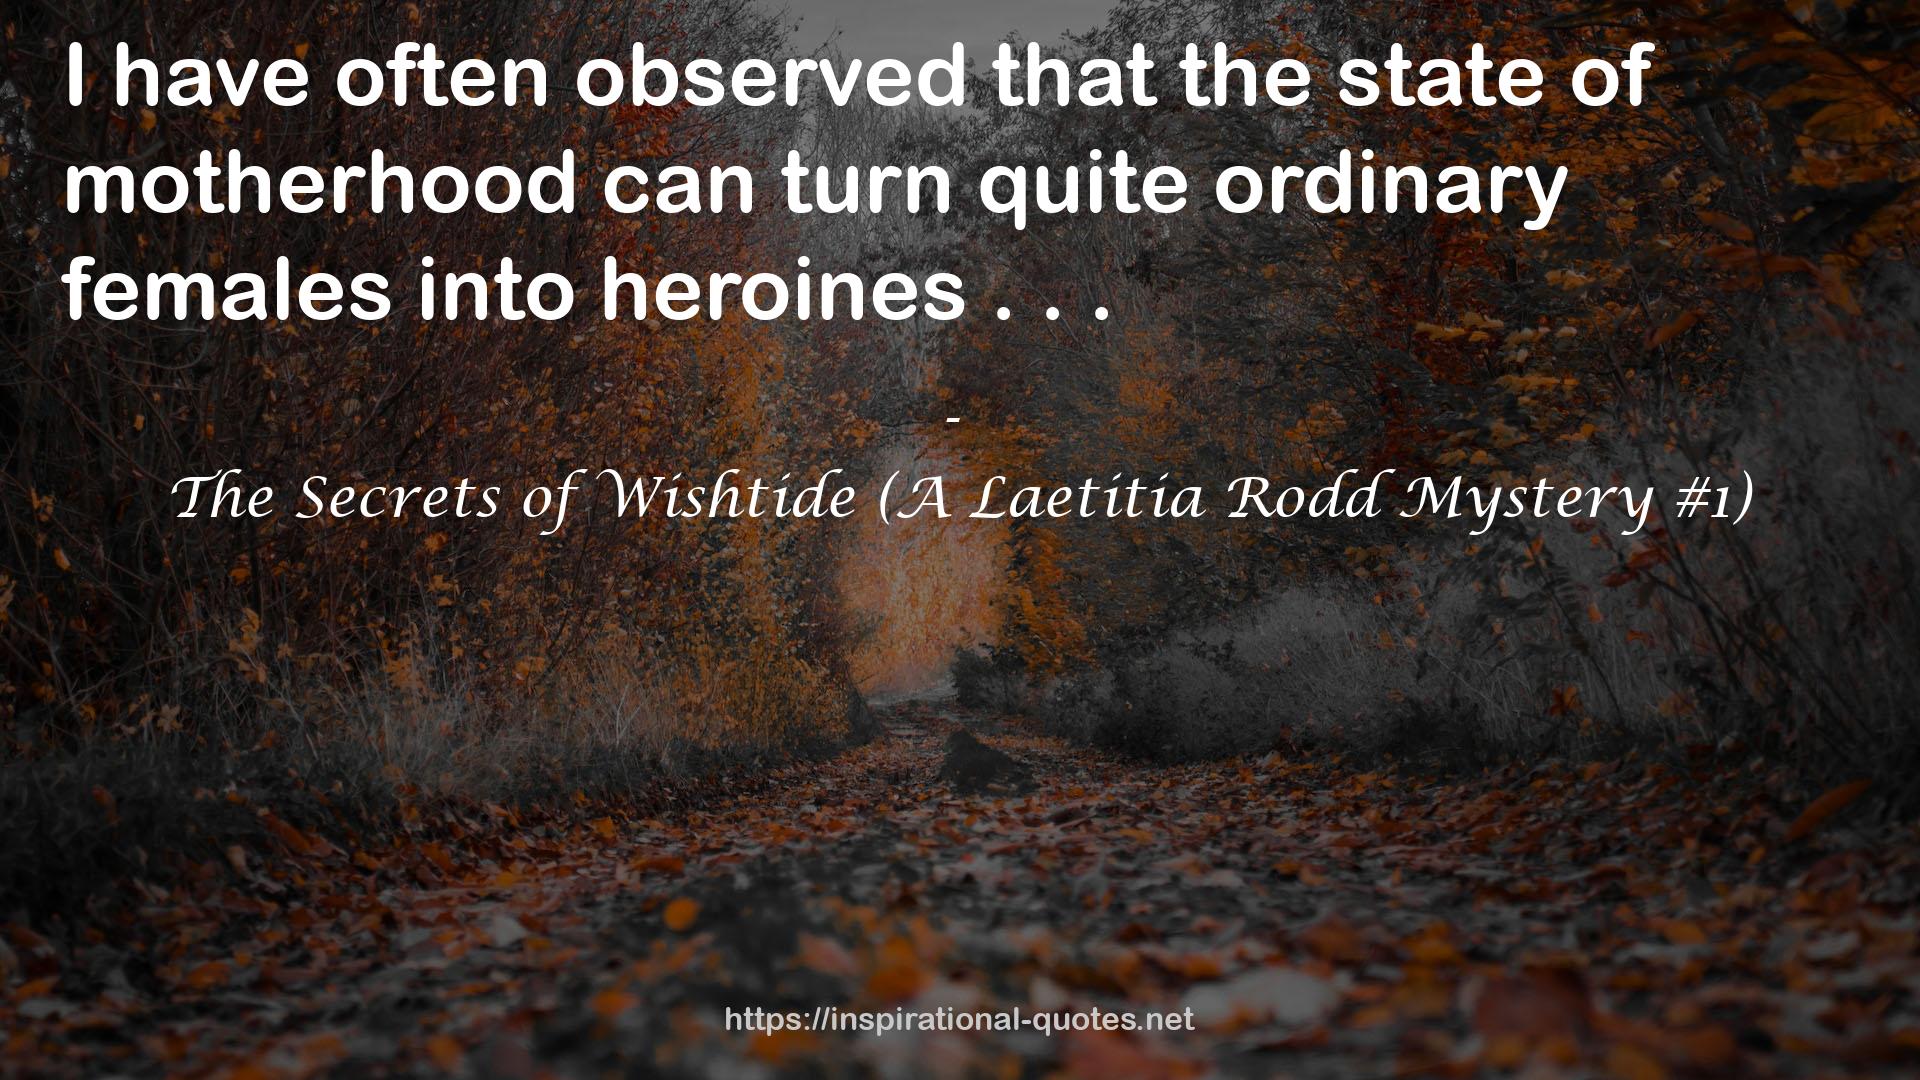 The Secrets of Wishtide (A Laetitia Rodd Mystery #1) QUOTES